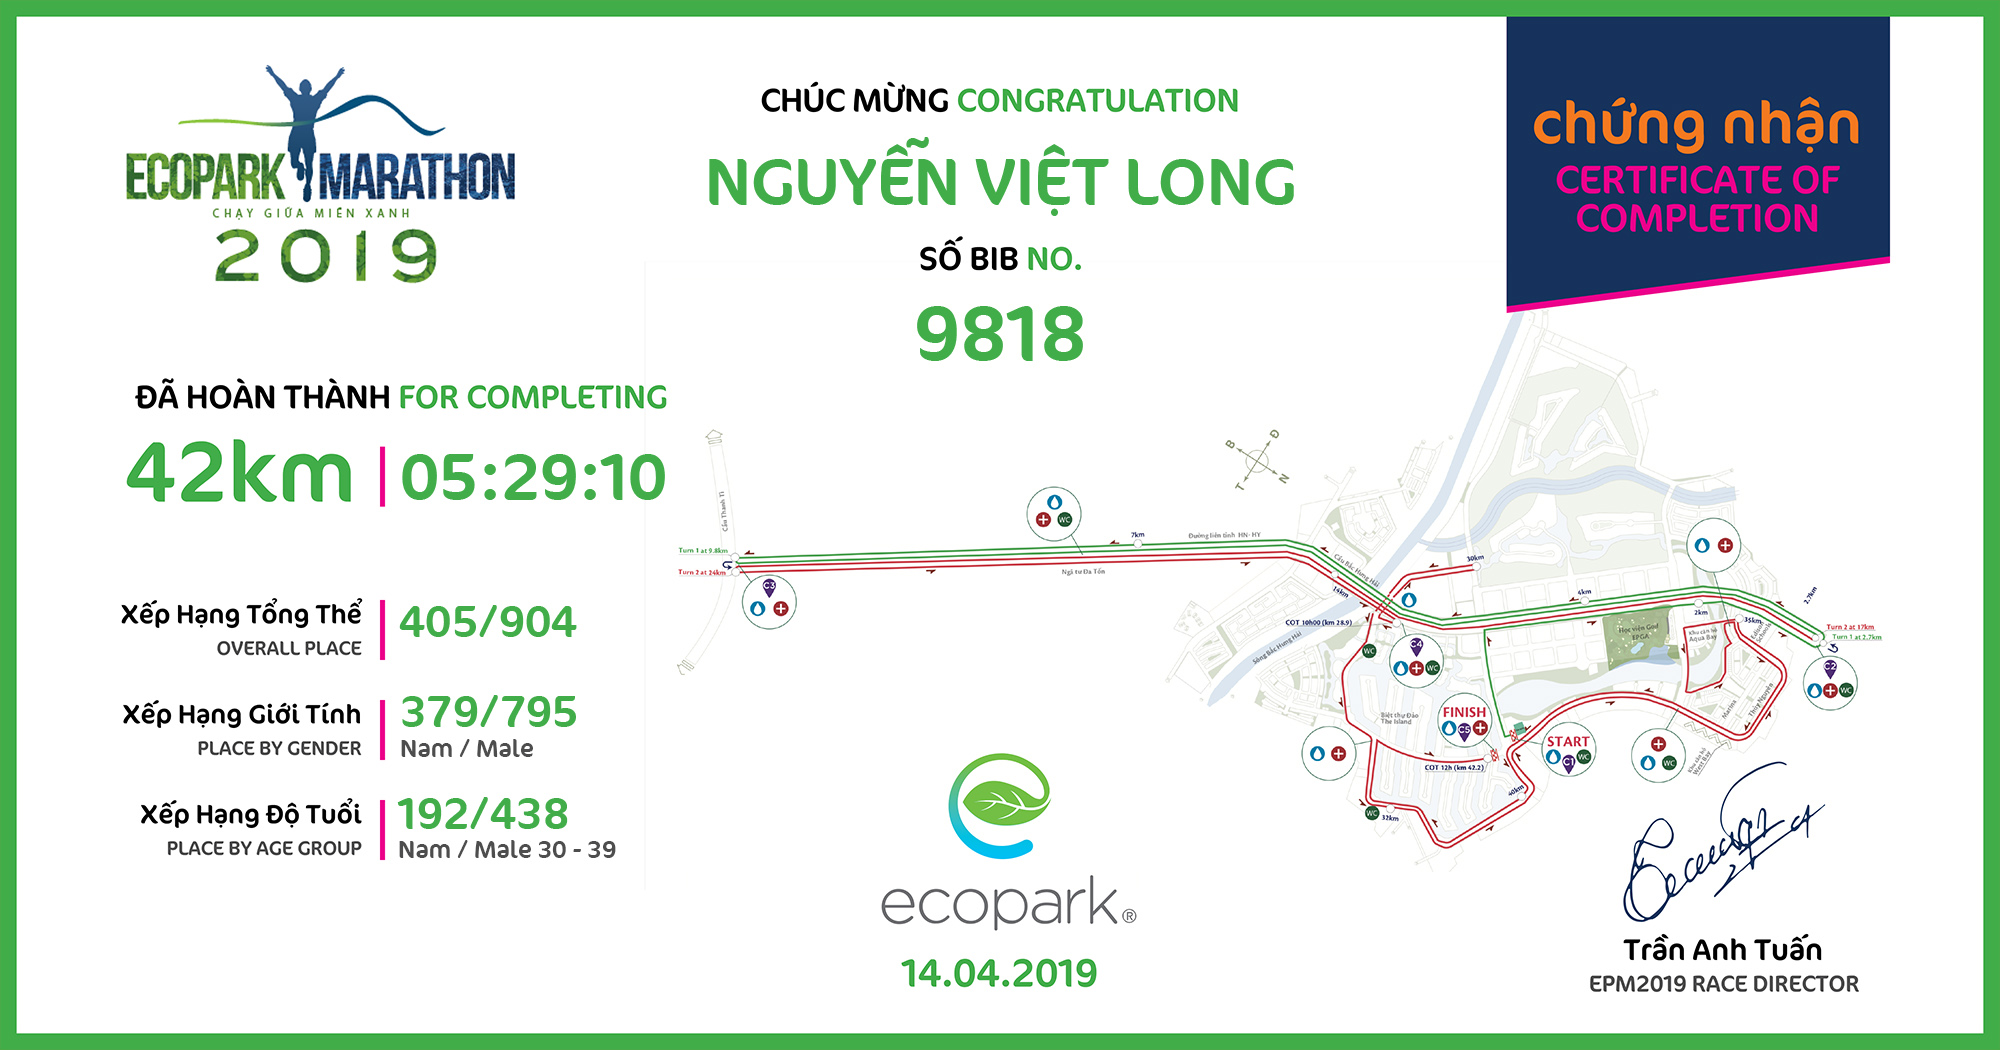 9818 - Nguyễn Việt Long